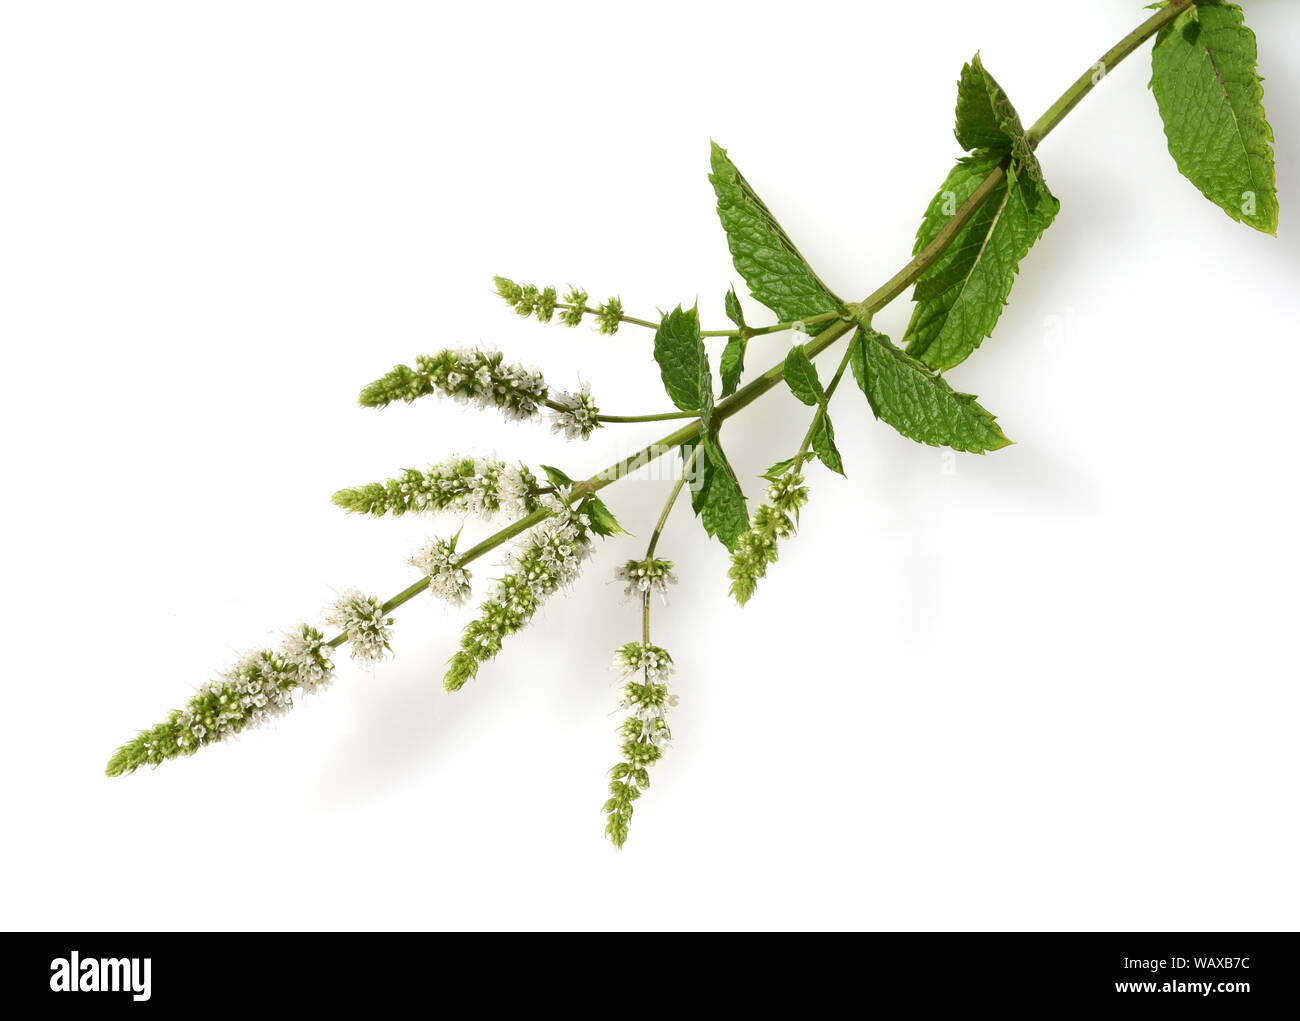 Marokkanische Minze, Mentha spicata, ist ein Duftkraut und eine Heilpflanze. Sie kommt wild vor und wird auch in der Medizin verwendet. Moroccan mint, Stock Photo